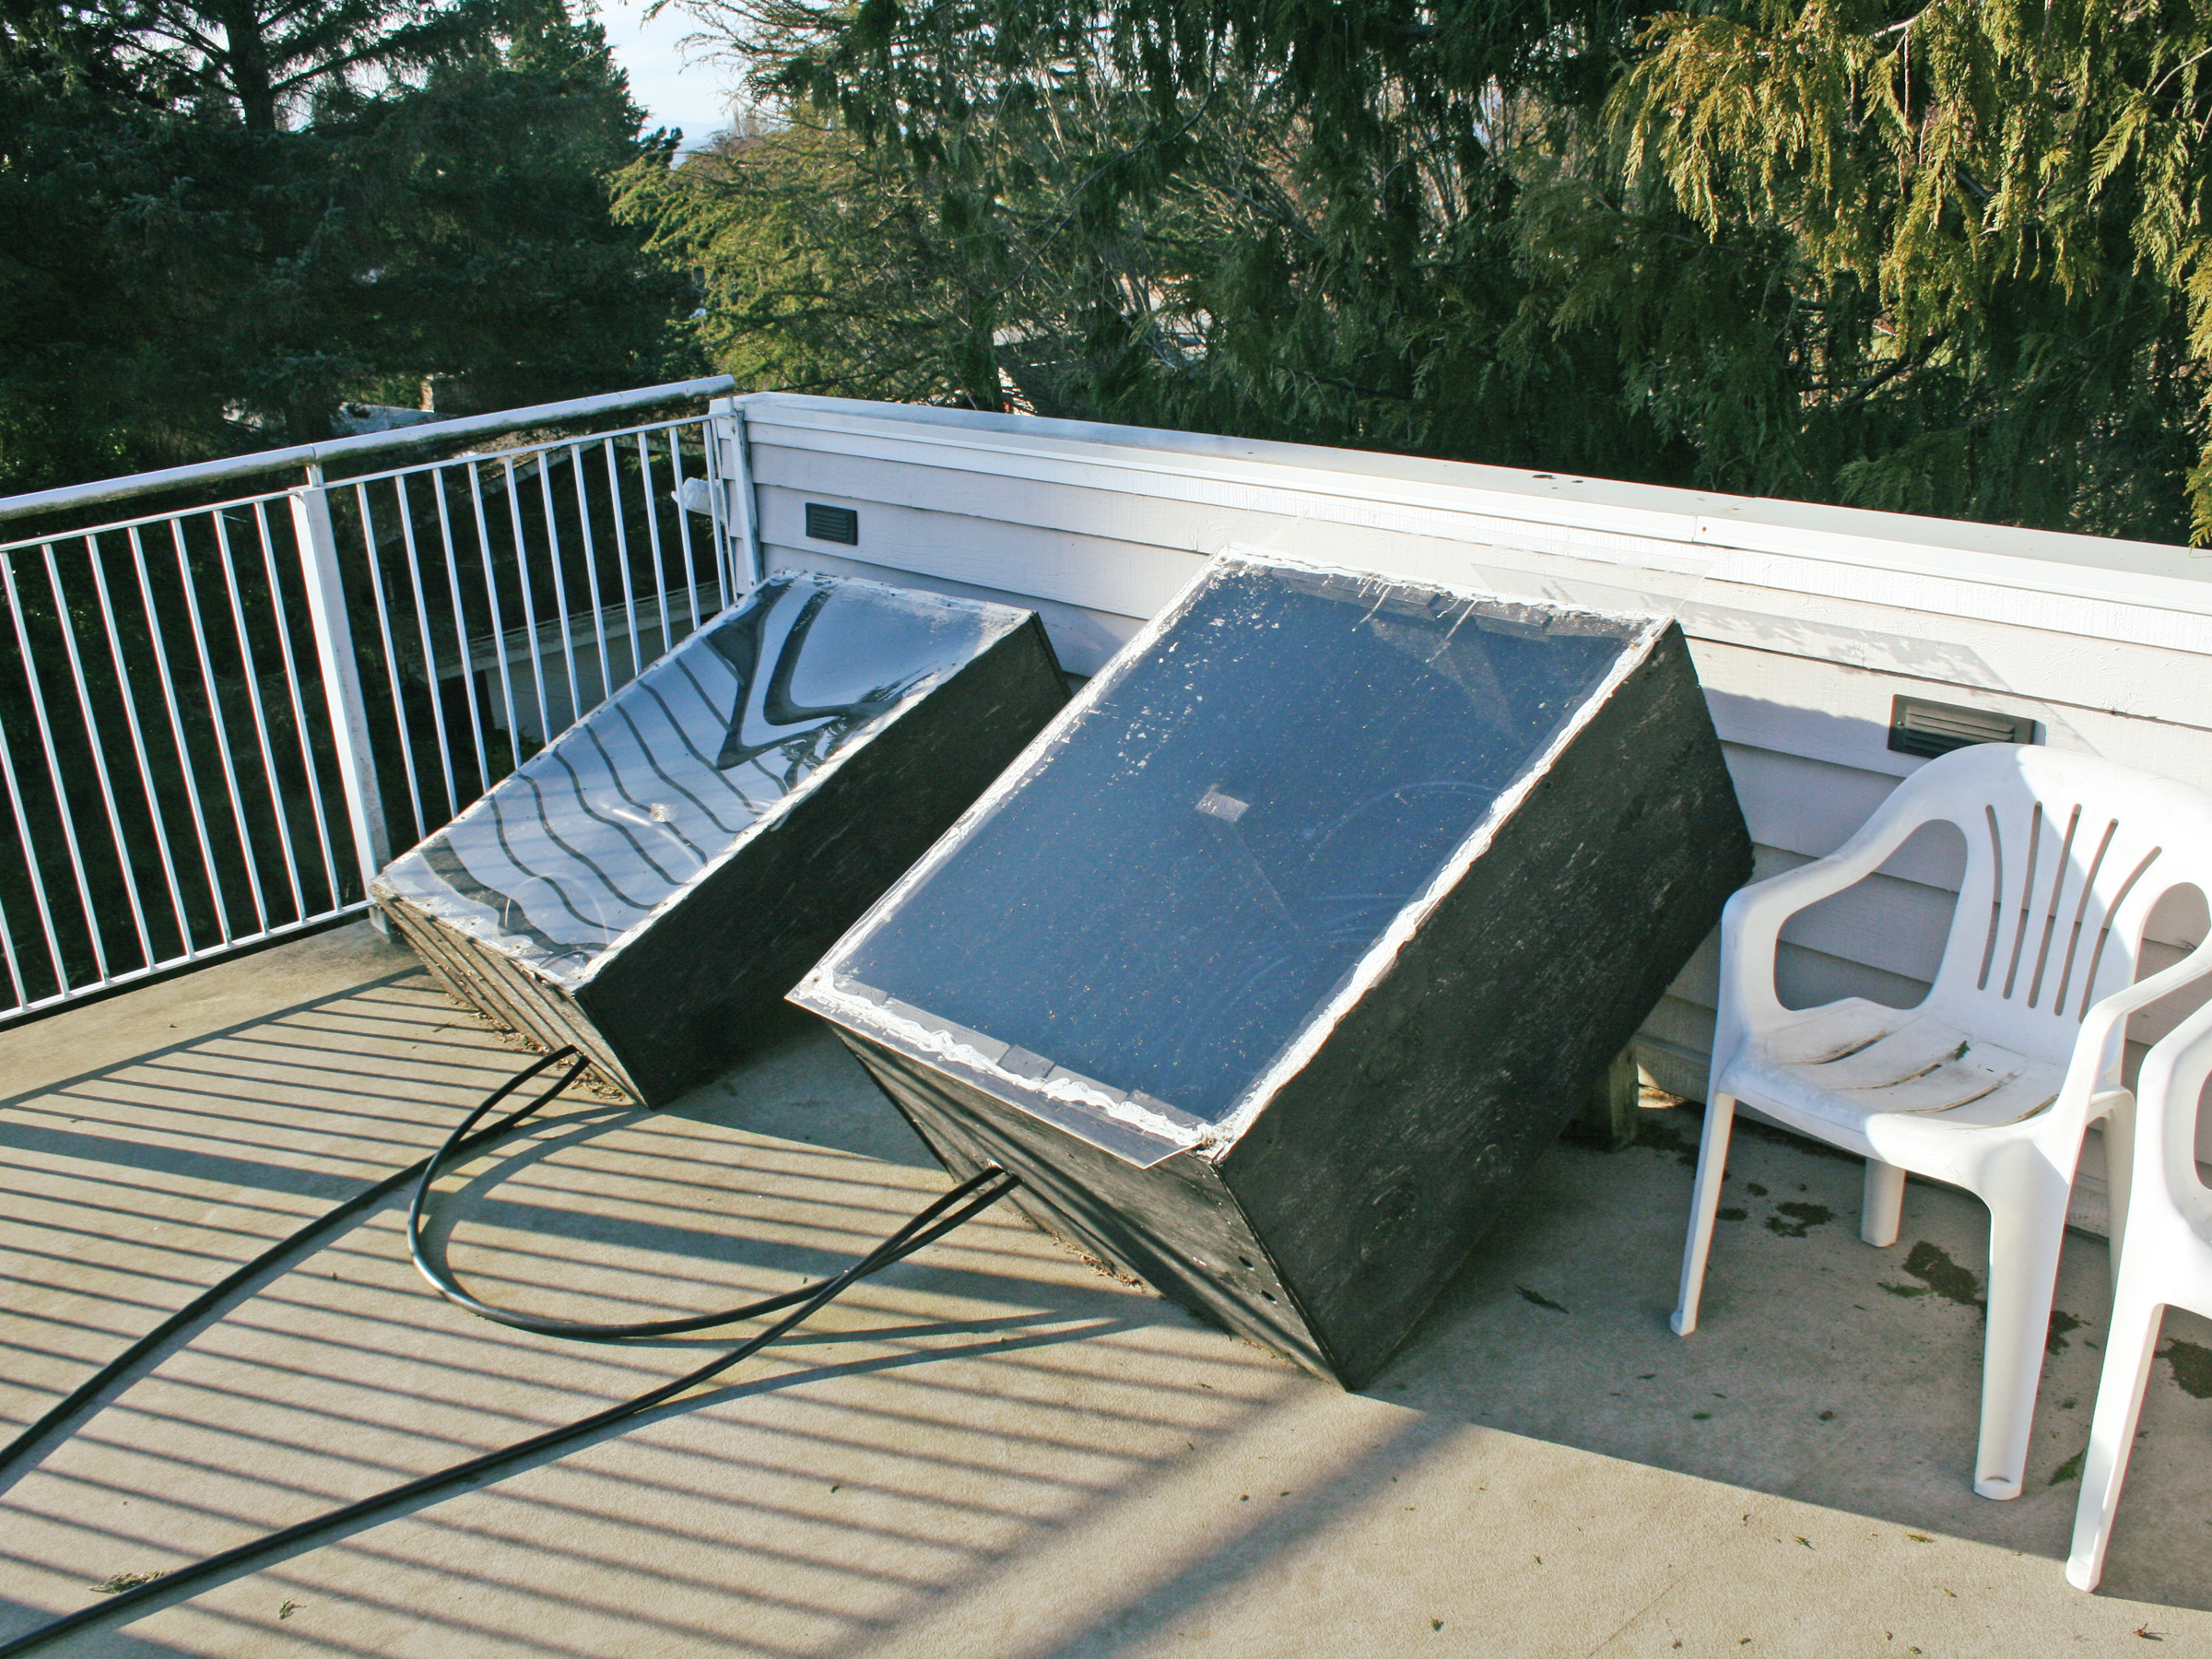 Solar Hybrid Hot Tub